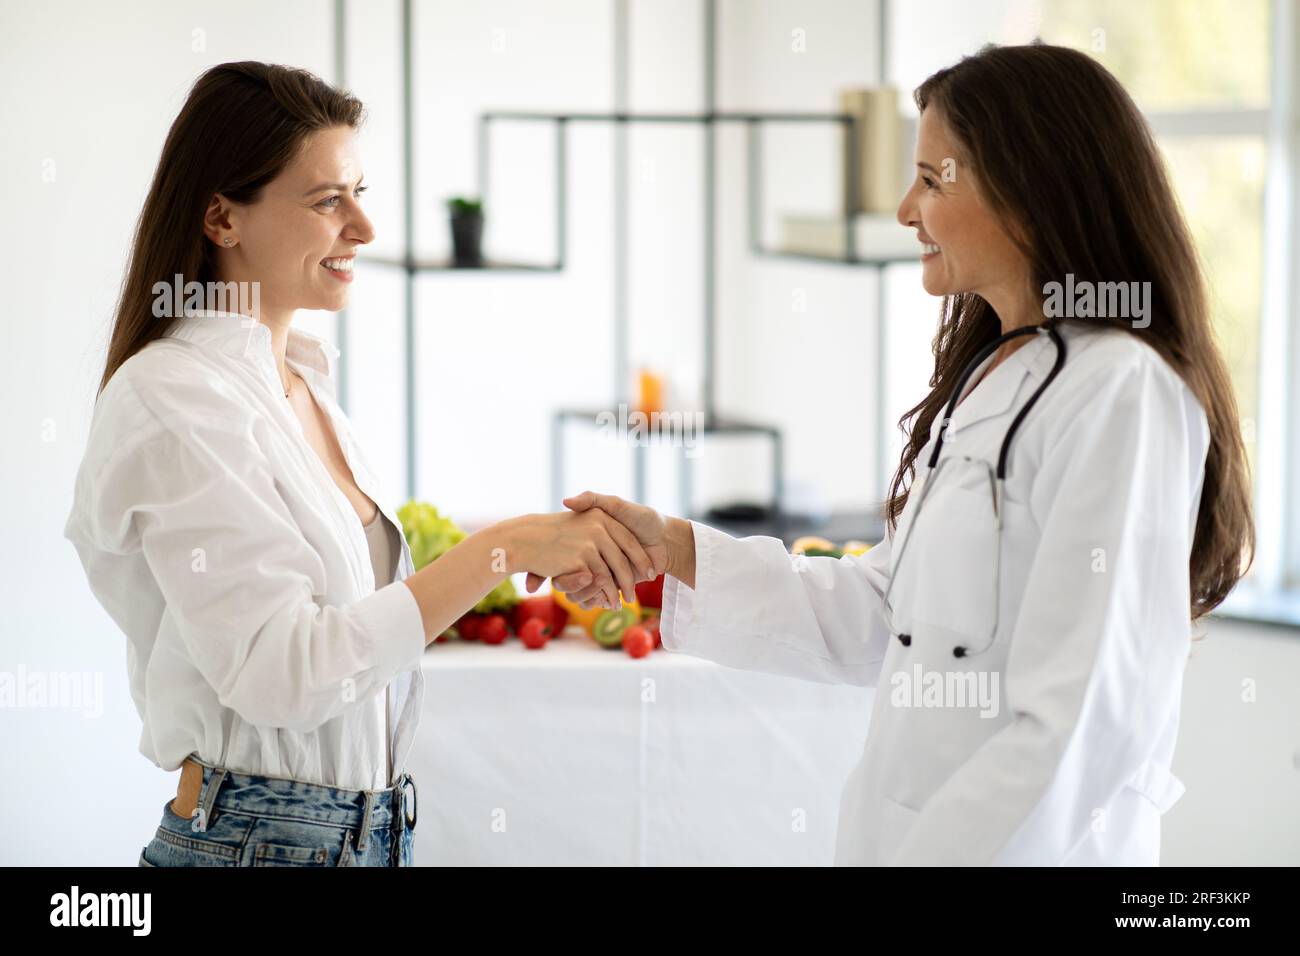 Joyeuse dame européenne d'âge moyen médecin nutritionniste en manteau blanc conseille le patient de femme millénaire, serrant la main Banque D'Images